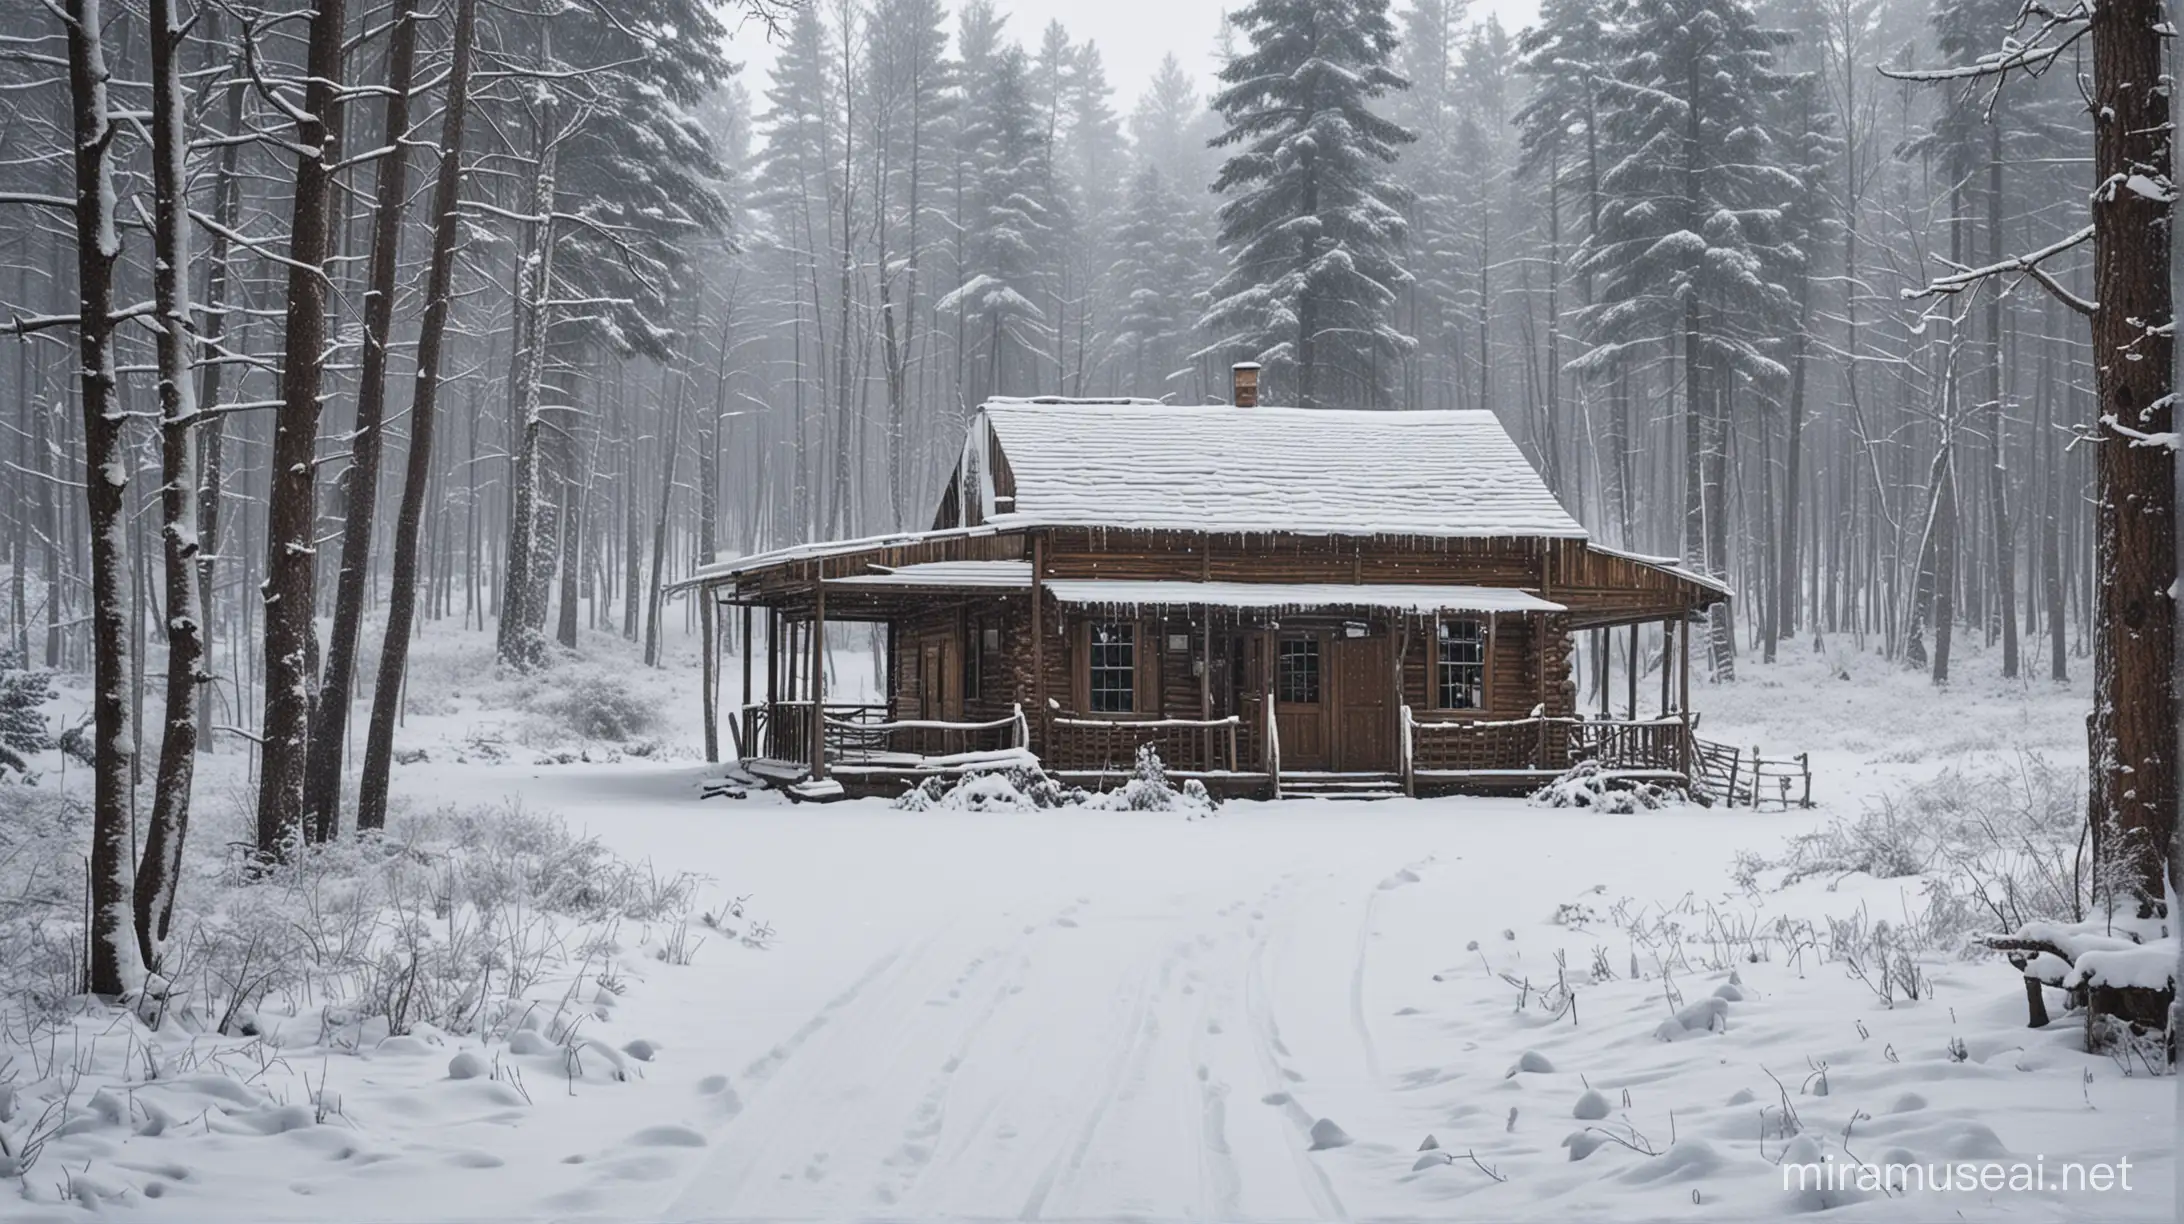 Winter Wonderland Saloon in Snowy Forest